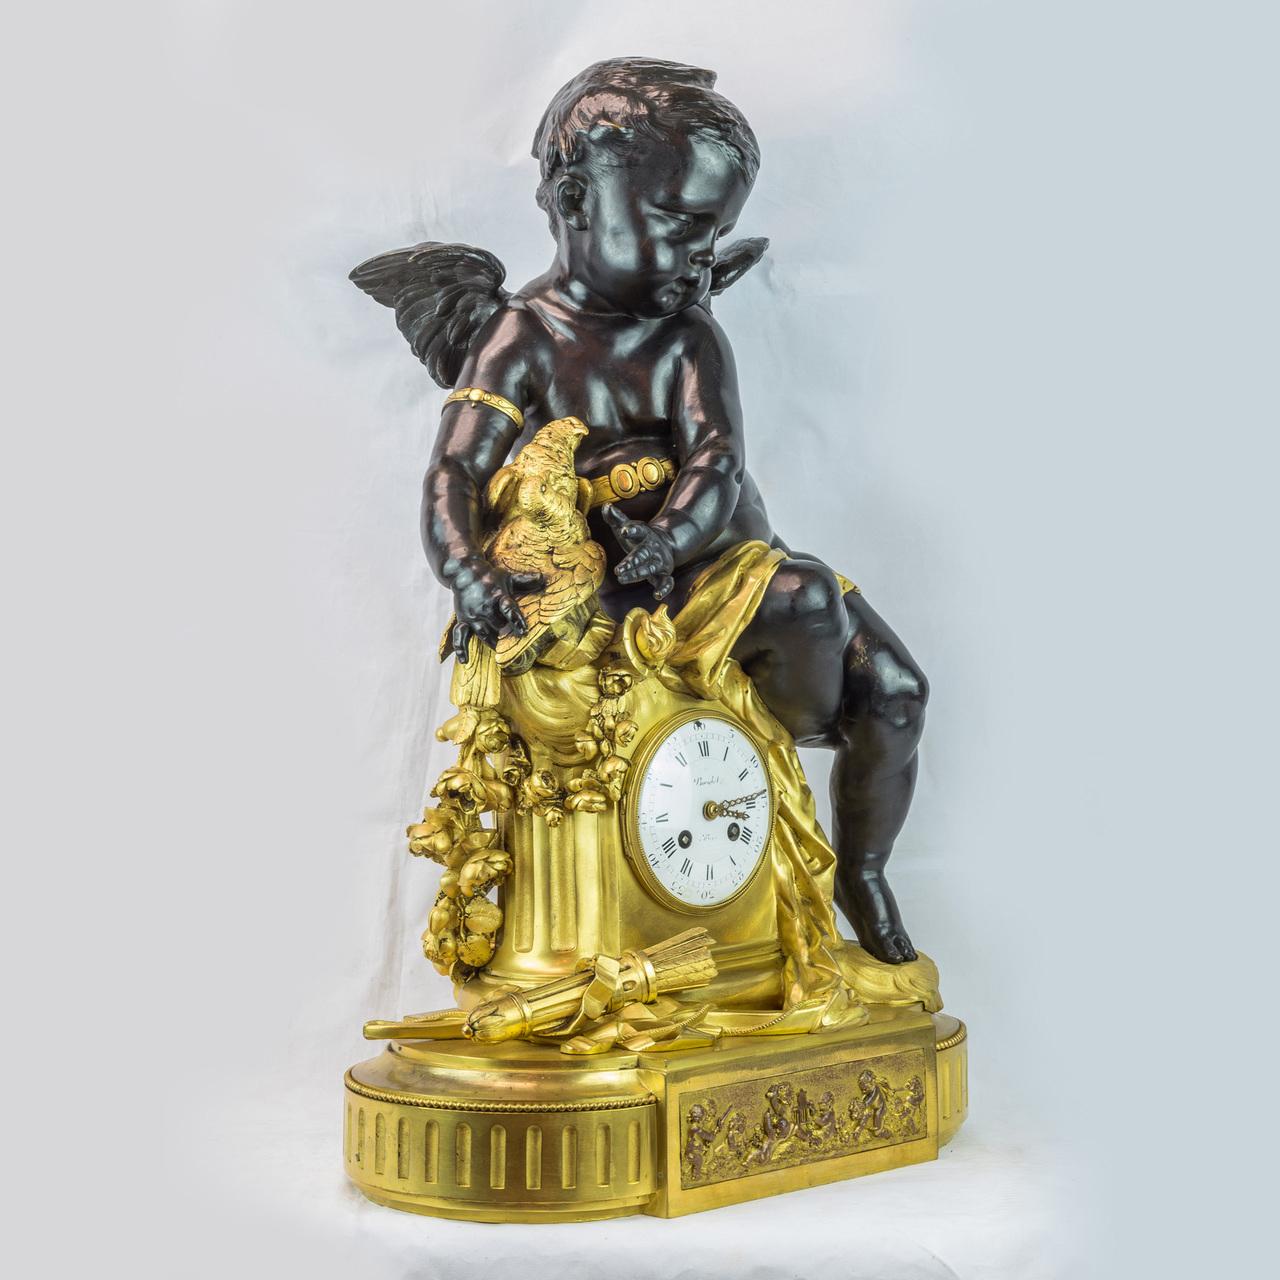 Ein majestätischer Putto aus patinierter Bronze, der auf einer vergoldeten Kaminuhr sitzt.
Modelliert mit einem sitzenden Putto, der zwei Tauben hält. Der Putto lehnt sich über eine vergoldete Kaminuhr mit Girlande, die von einem Pfeil und Bogen